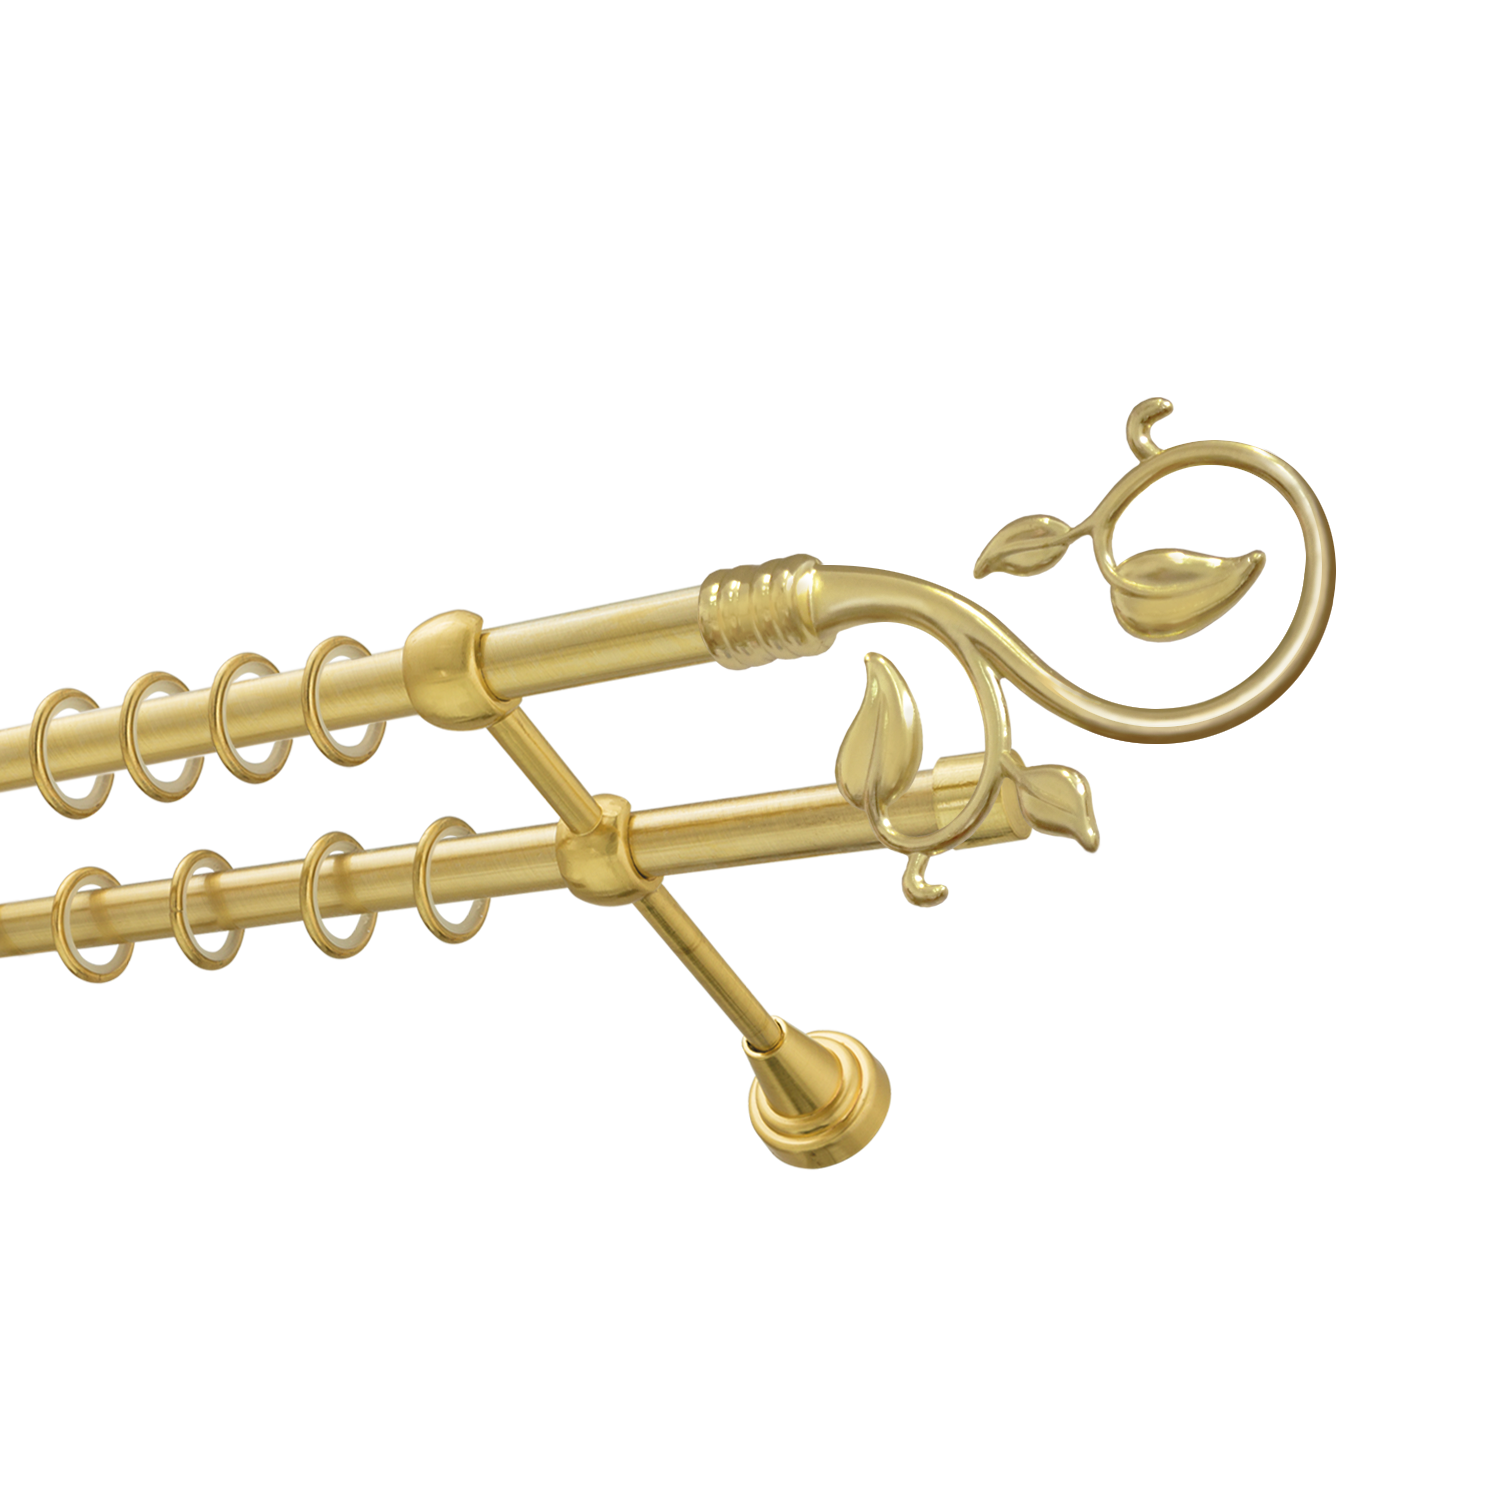 Металлический карниз для штор Амели, двухрядный 16/16 мм, золото, гладкая штанга, длина 160 см - фото Wikidecor.ru